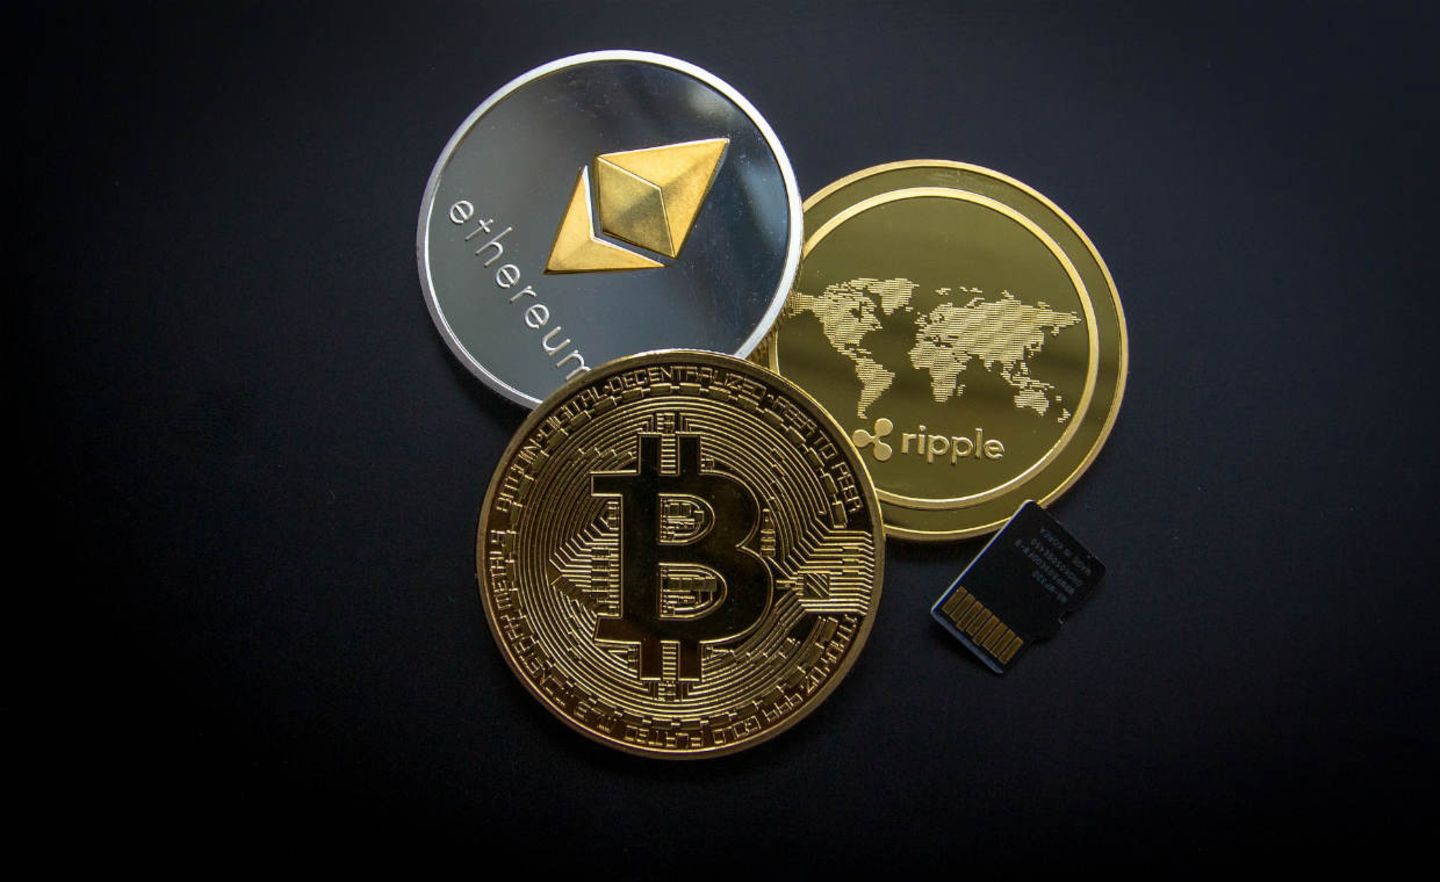 über trade republic in bitcoin investieren beste kryptowährung der zukunft